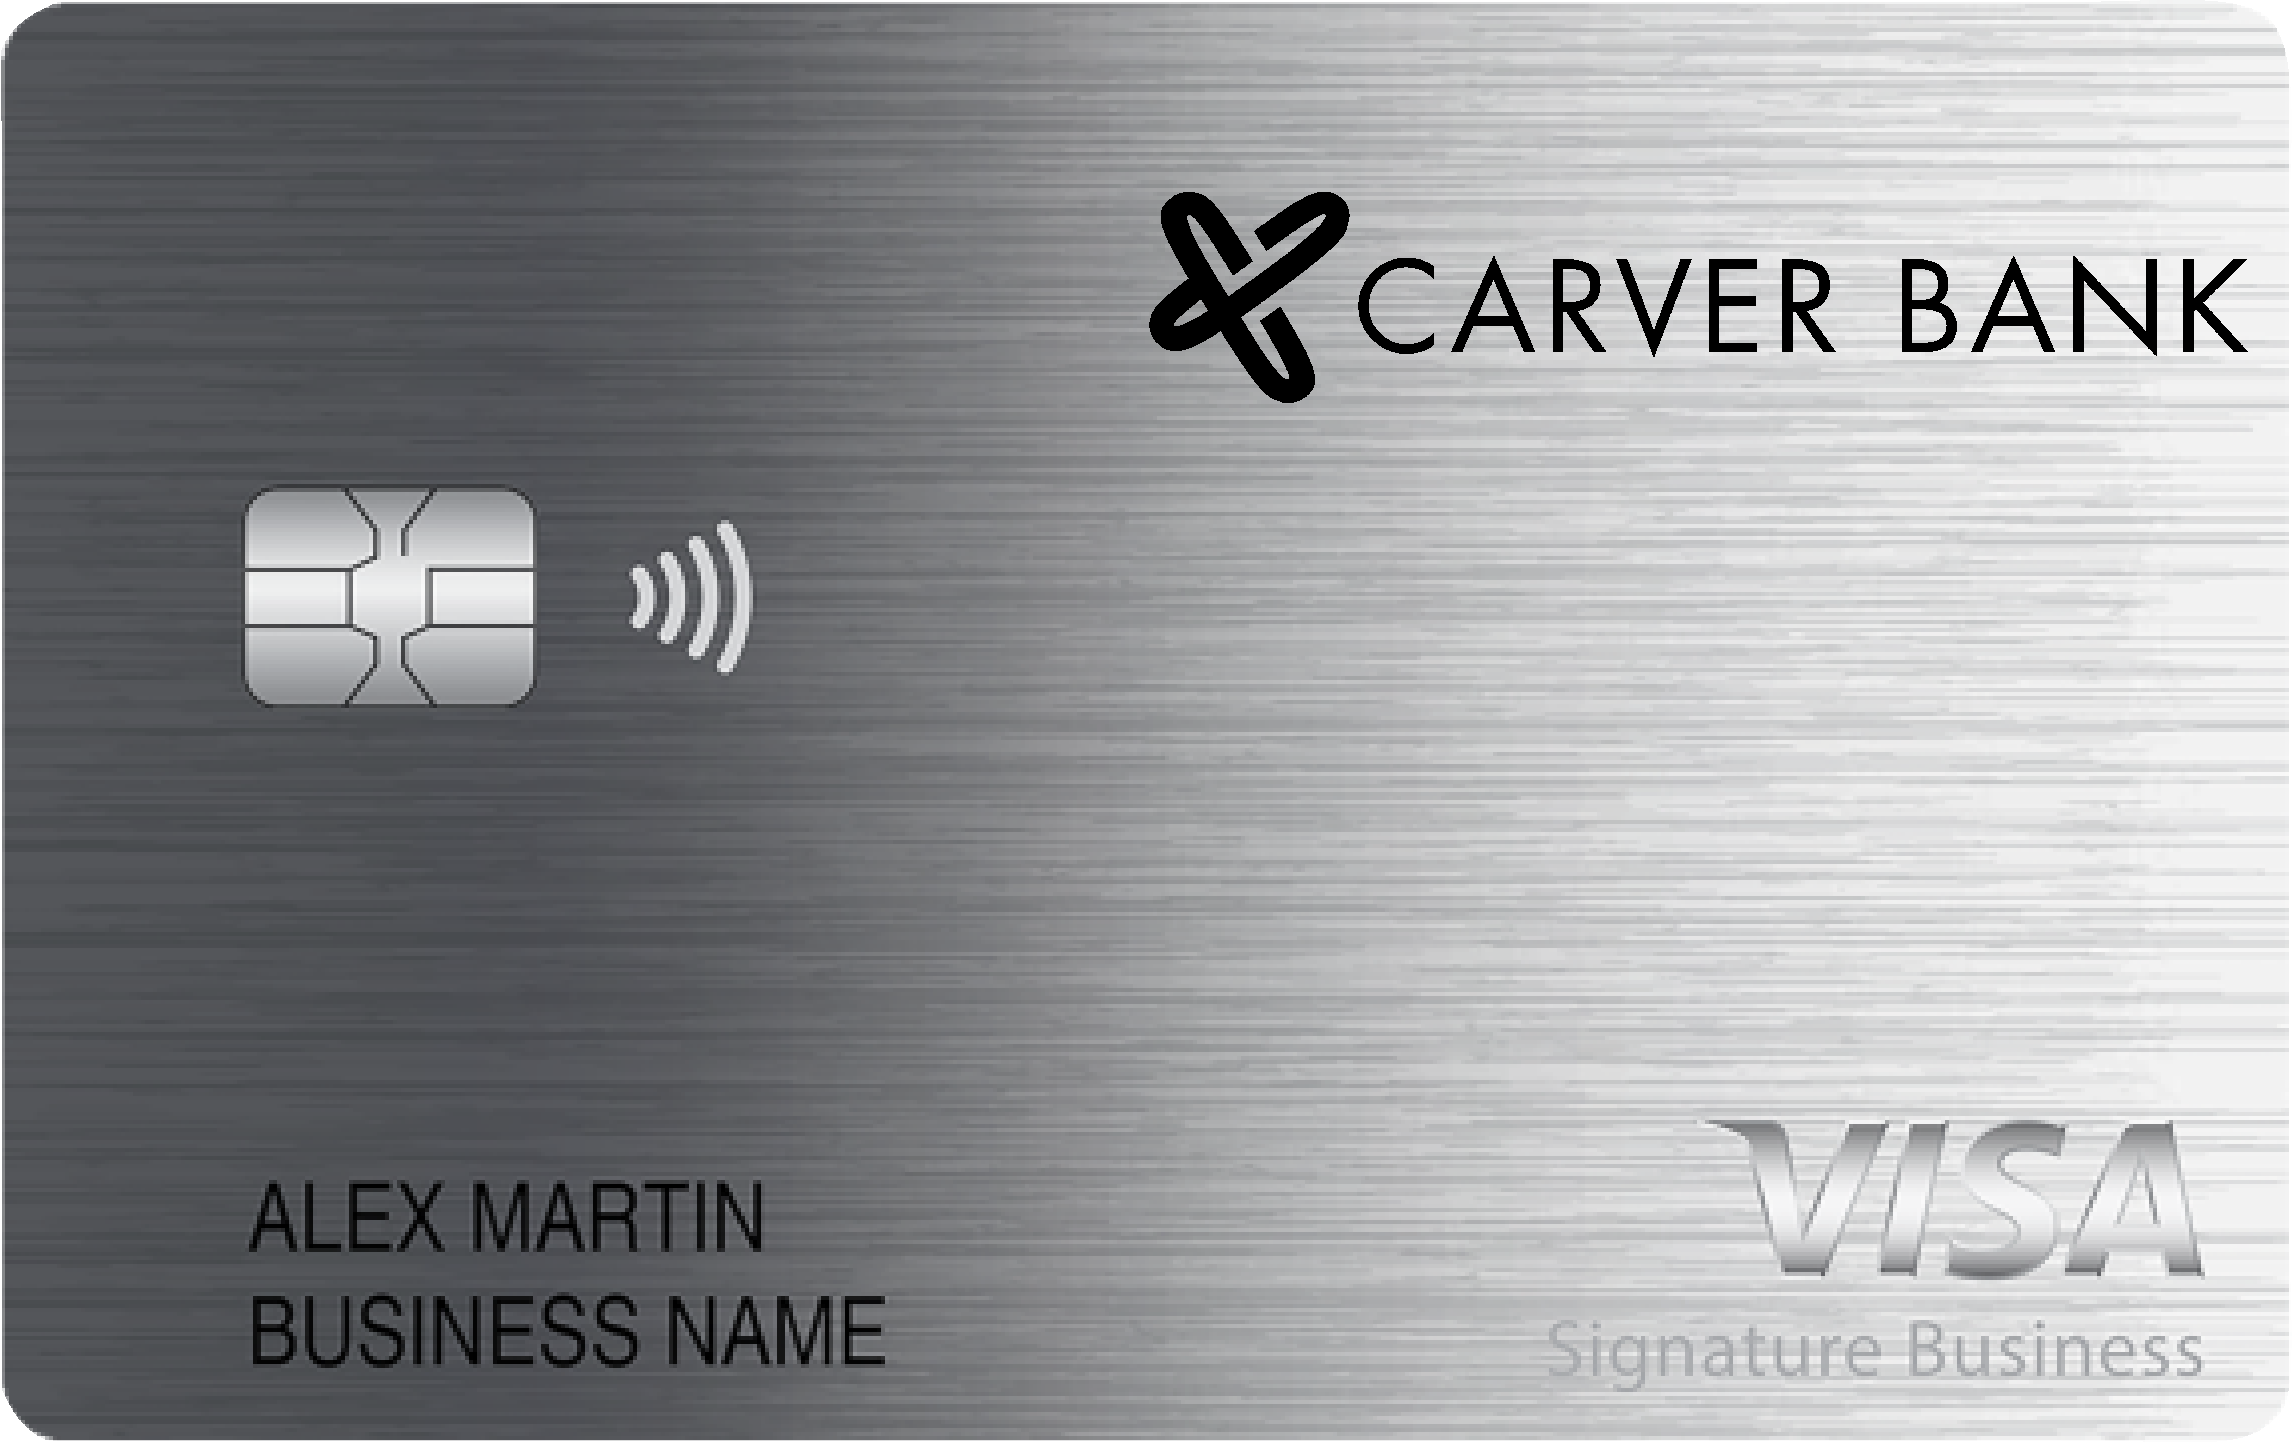 Carver Bank Smart Business Rewards Card